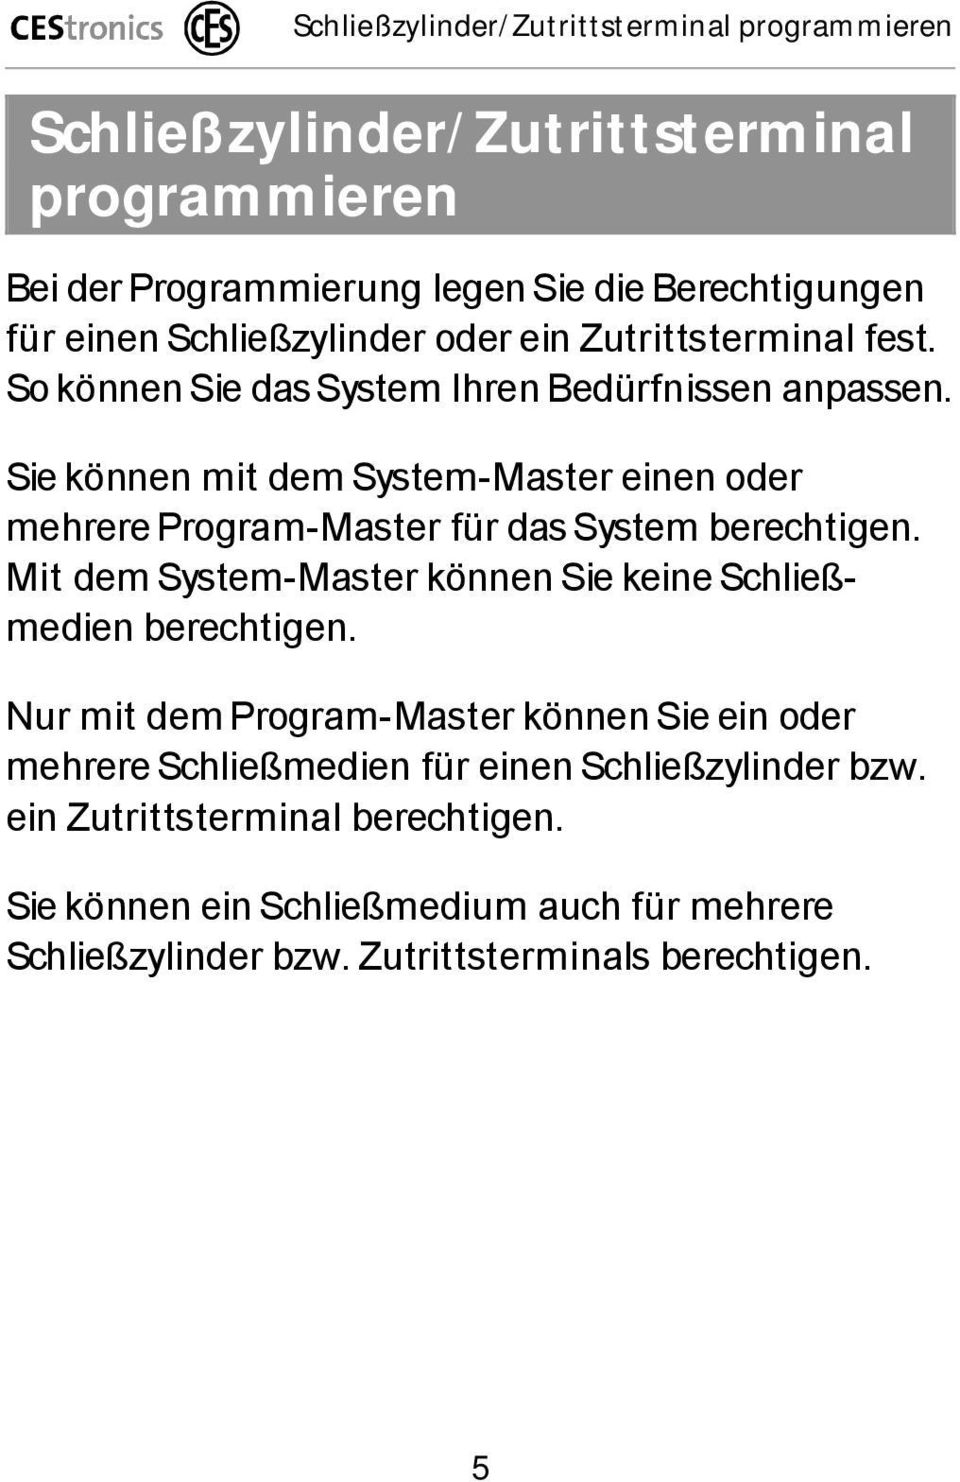 Sie können mit dem System-Master einen oder mehrere Program-Master für das System berechtigen. Mit dem System-Master können Sie keine Schließmedien berechtigen.